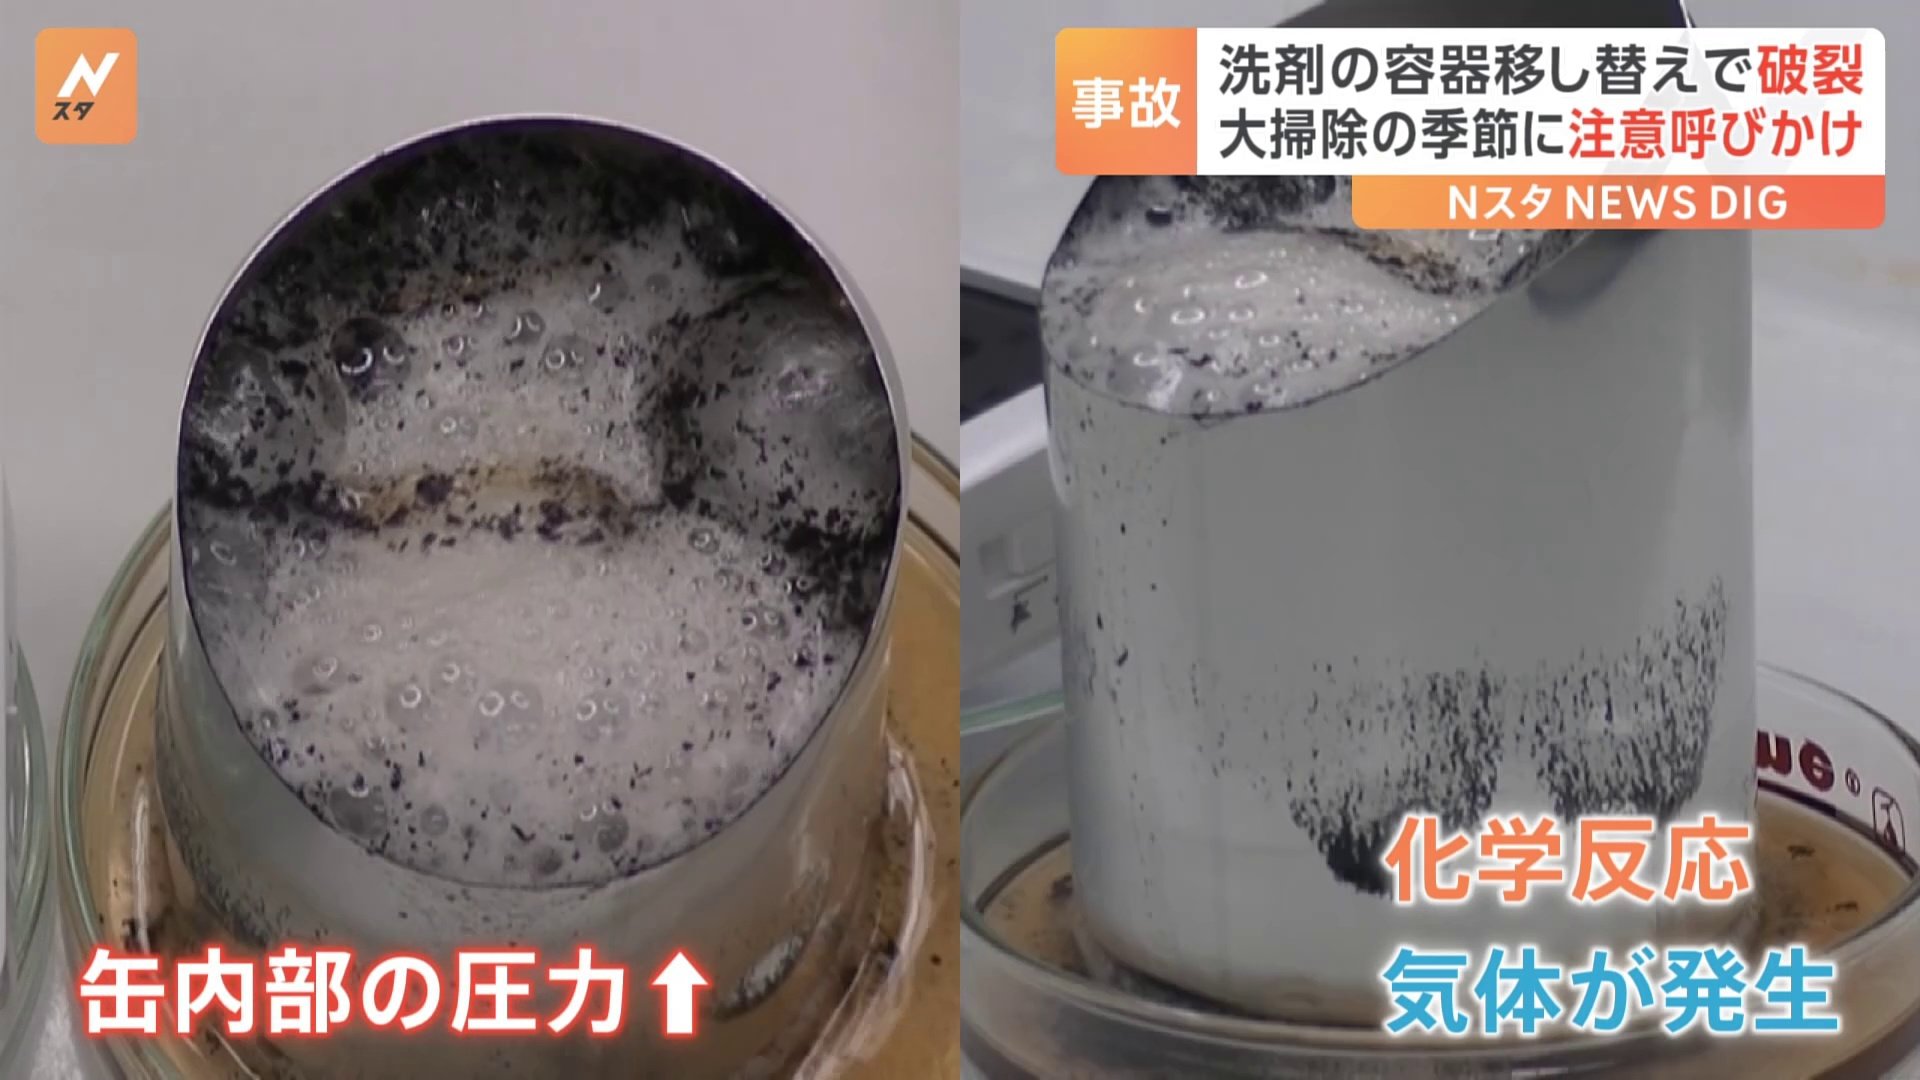 「アルカリ性洗剤」×「アルミ缶」で破裂事故年末の大掃除シーズン前に注意呼びかけ 東京消防庁